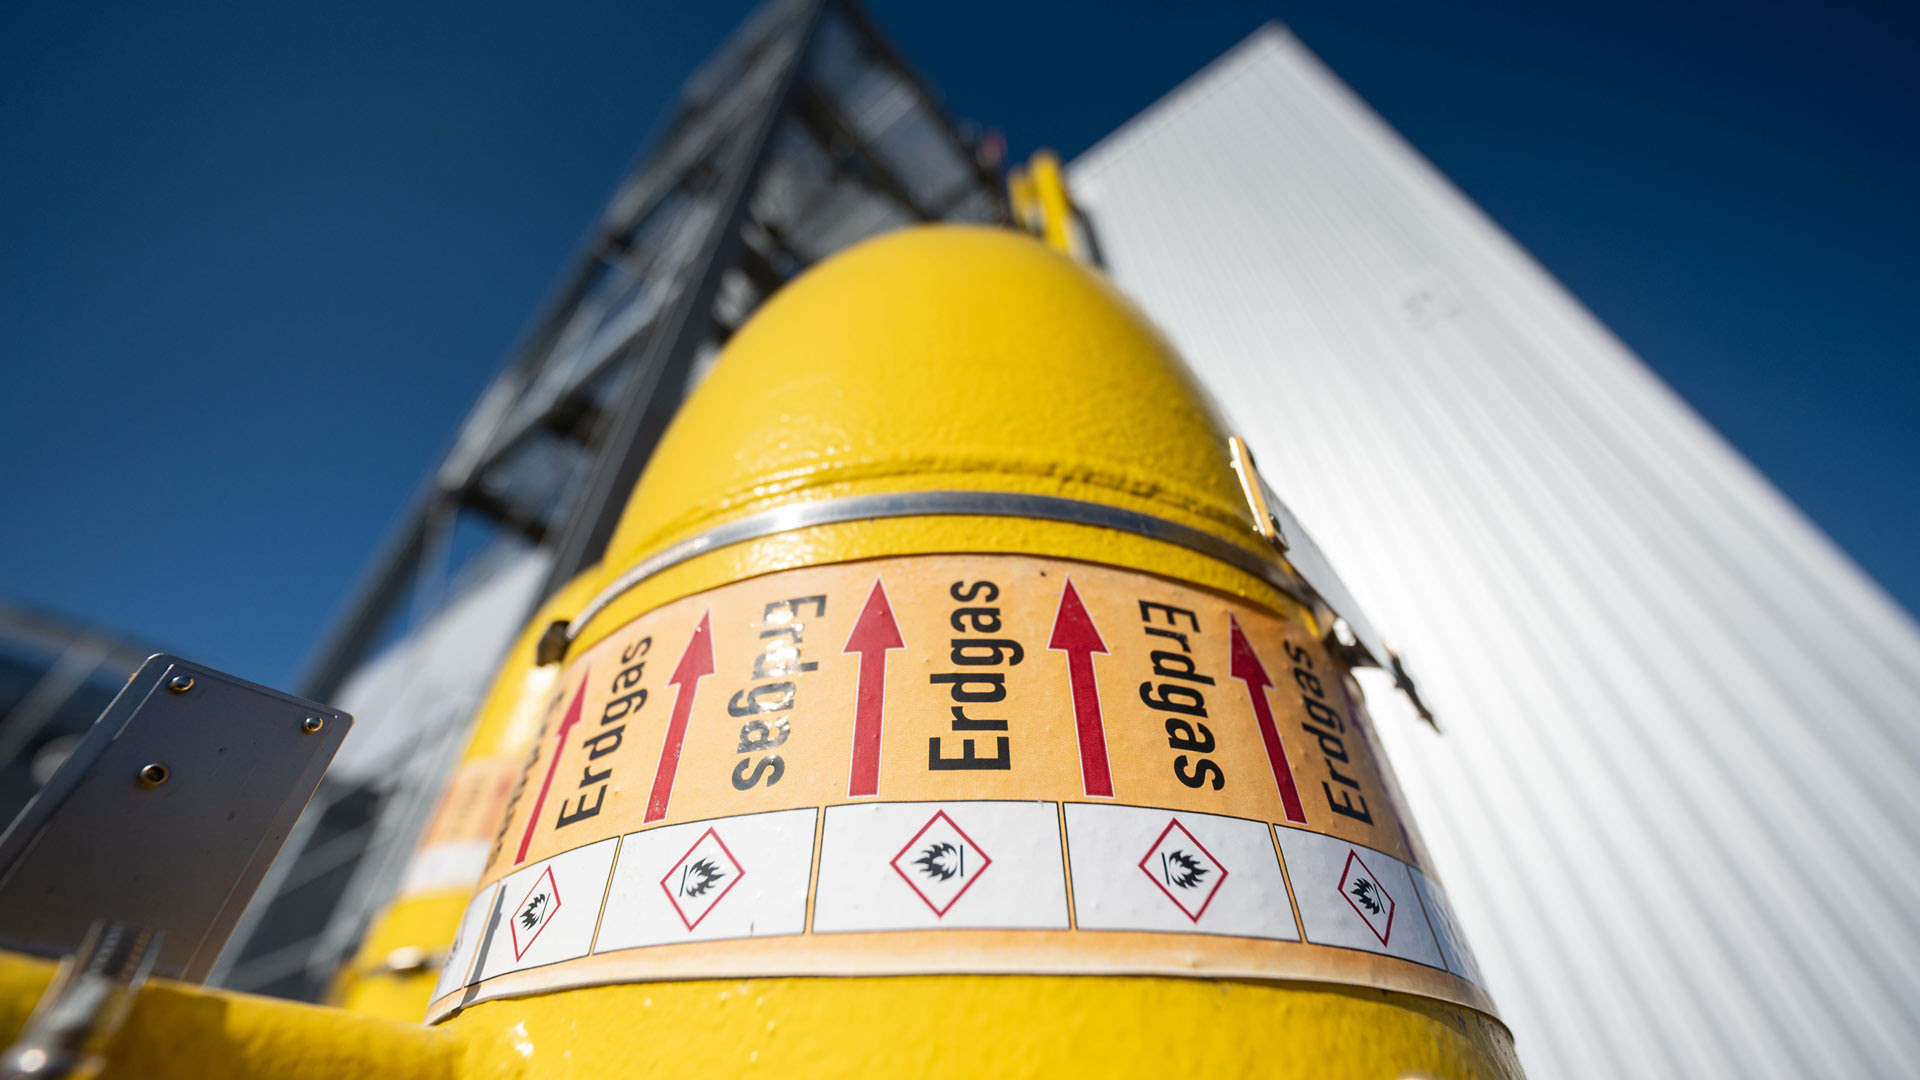 Steigende Kosten: EU will Gaspreis notfalls deckeln | tagesschau.de